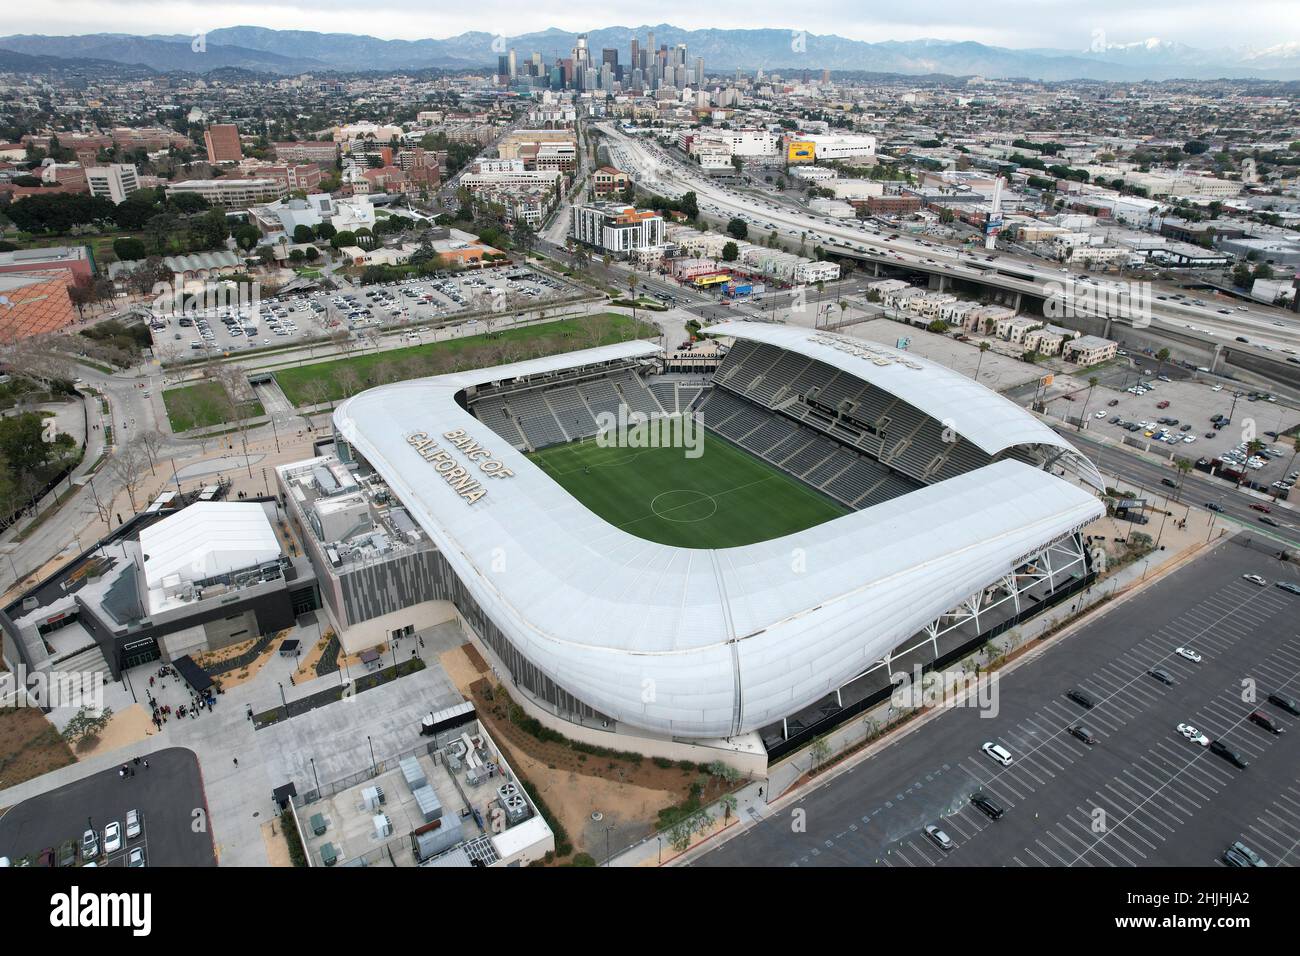 Eine Luftaufnahme des Banc of California Stadium, dem Heimstadion der LAFC-Fußballmannschaft, mit der Skyline der Innenstadt als Hintergrund, Samstag, 29. Januar 2022, Stockfoto